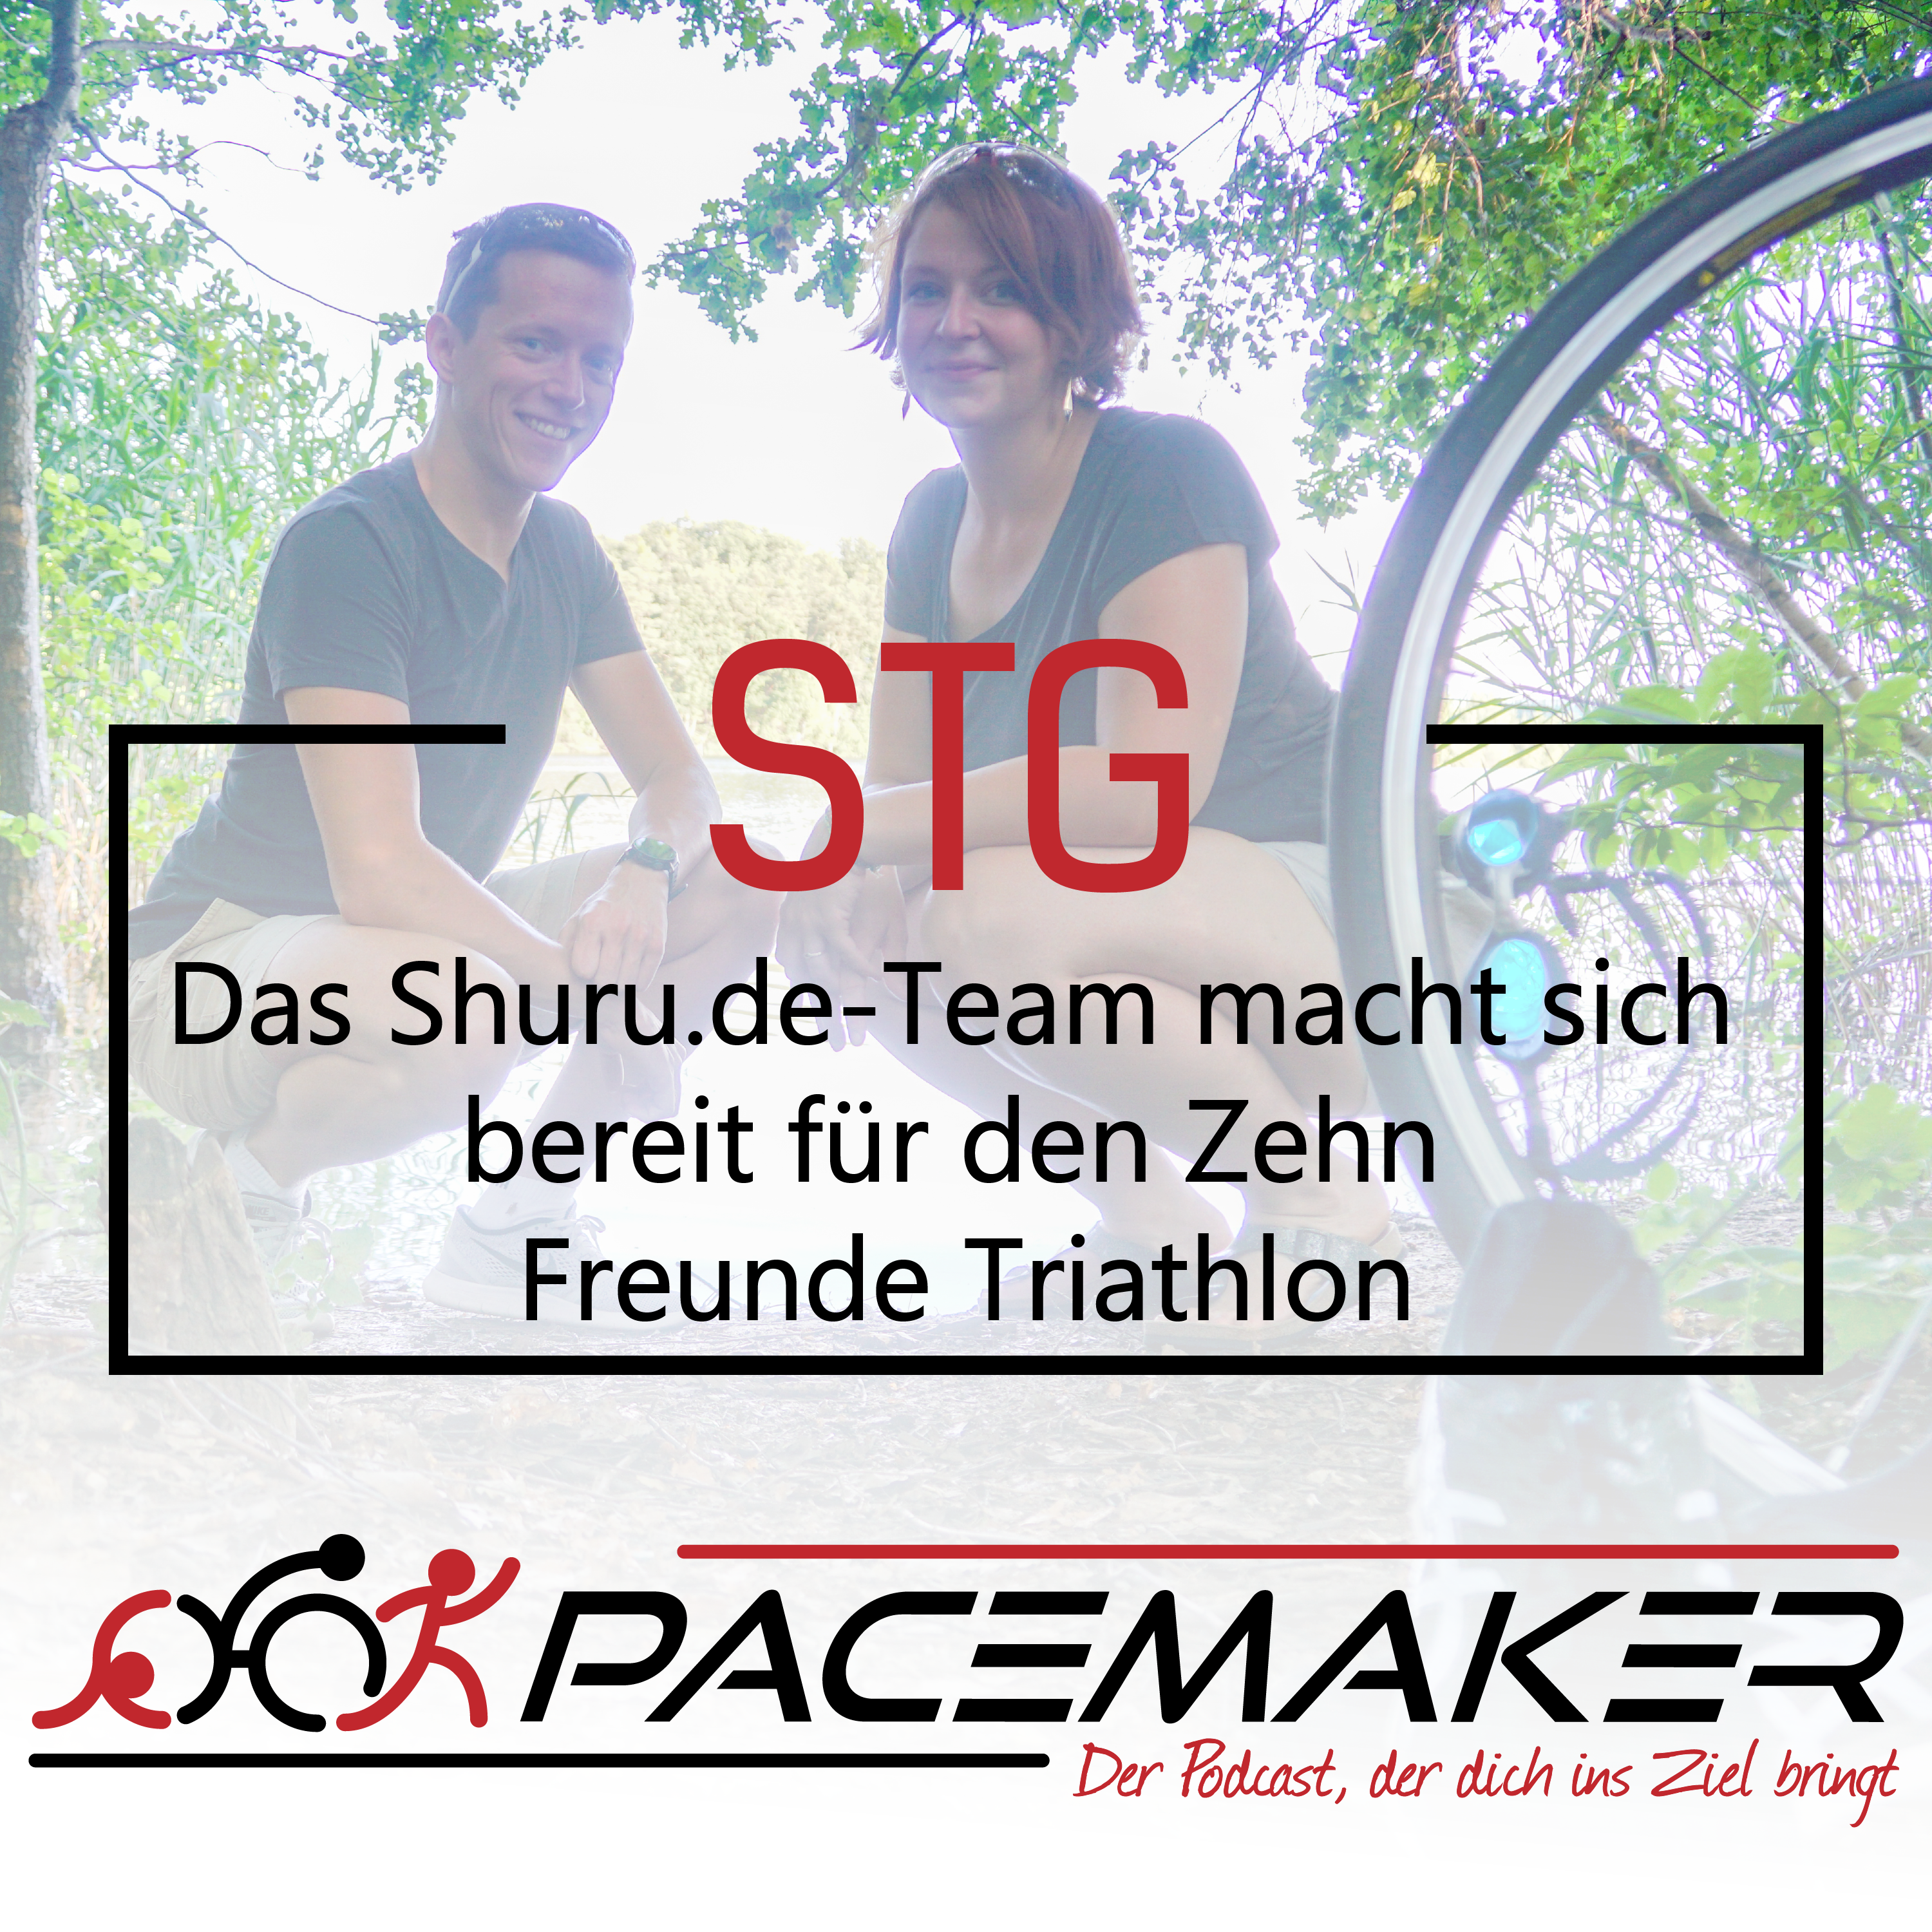 STG: Das Shuru.de-Team macht sich bereit für den Zehn Freunde Triathlon